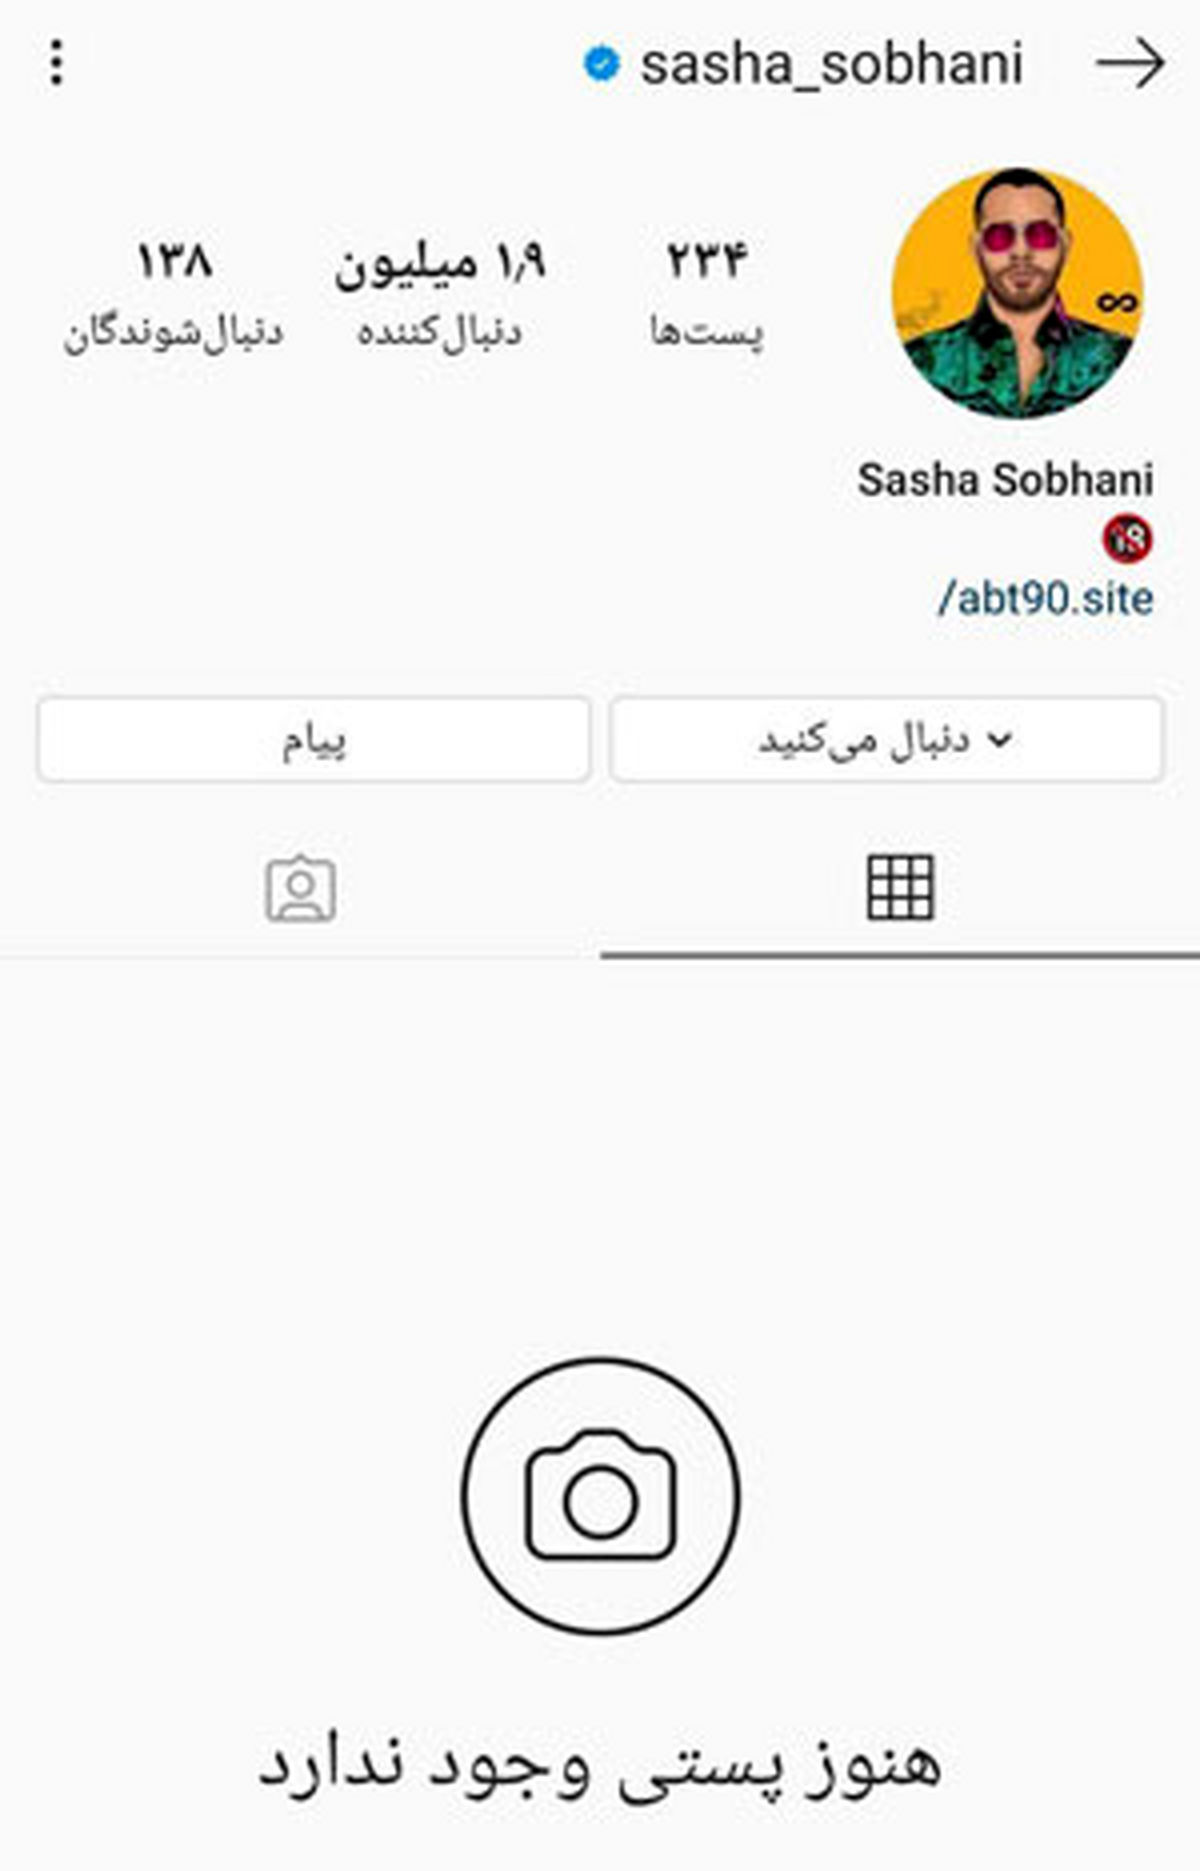 پیج ساشا سبحانی در اینستاگرام ریپورت و بسته شد